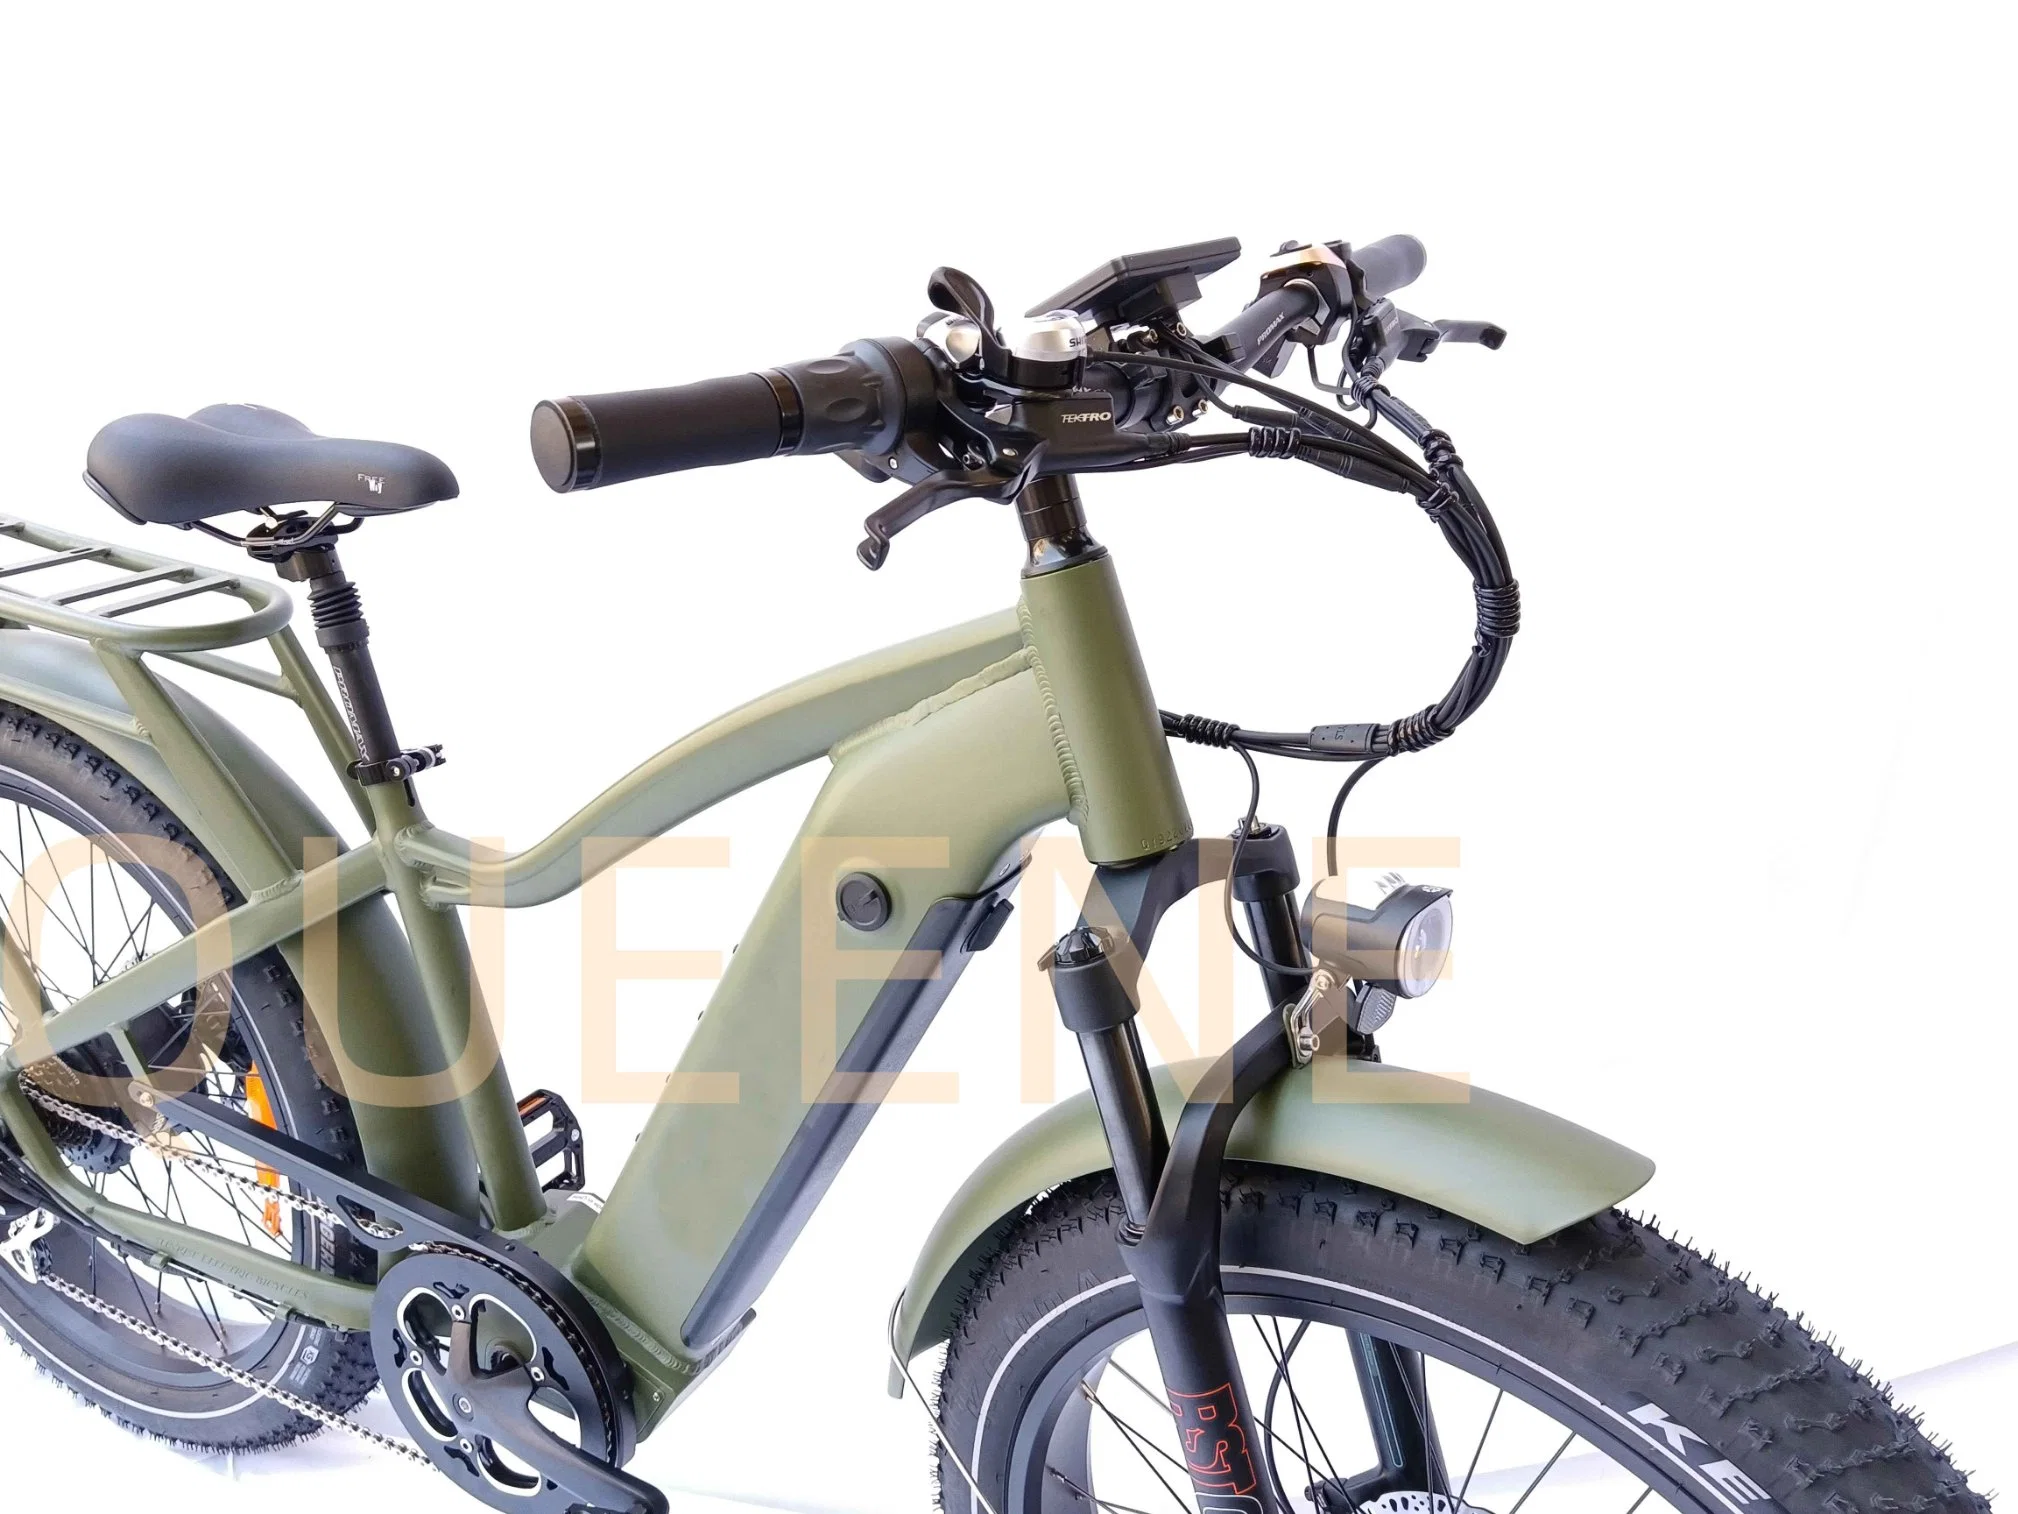 دراجة كهربائية بإطارات سميكة بقوة 500 واط / 750 واط / 1000 واط من براند كوين / بافانج بحجم 26 بوصة للتسلق في الجبال والتجوال على الثلوج.